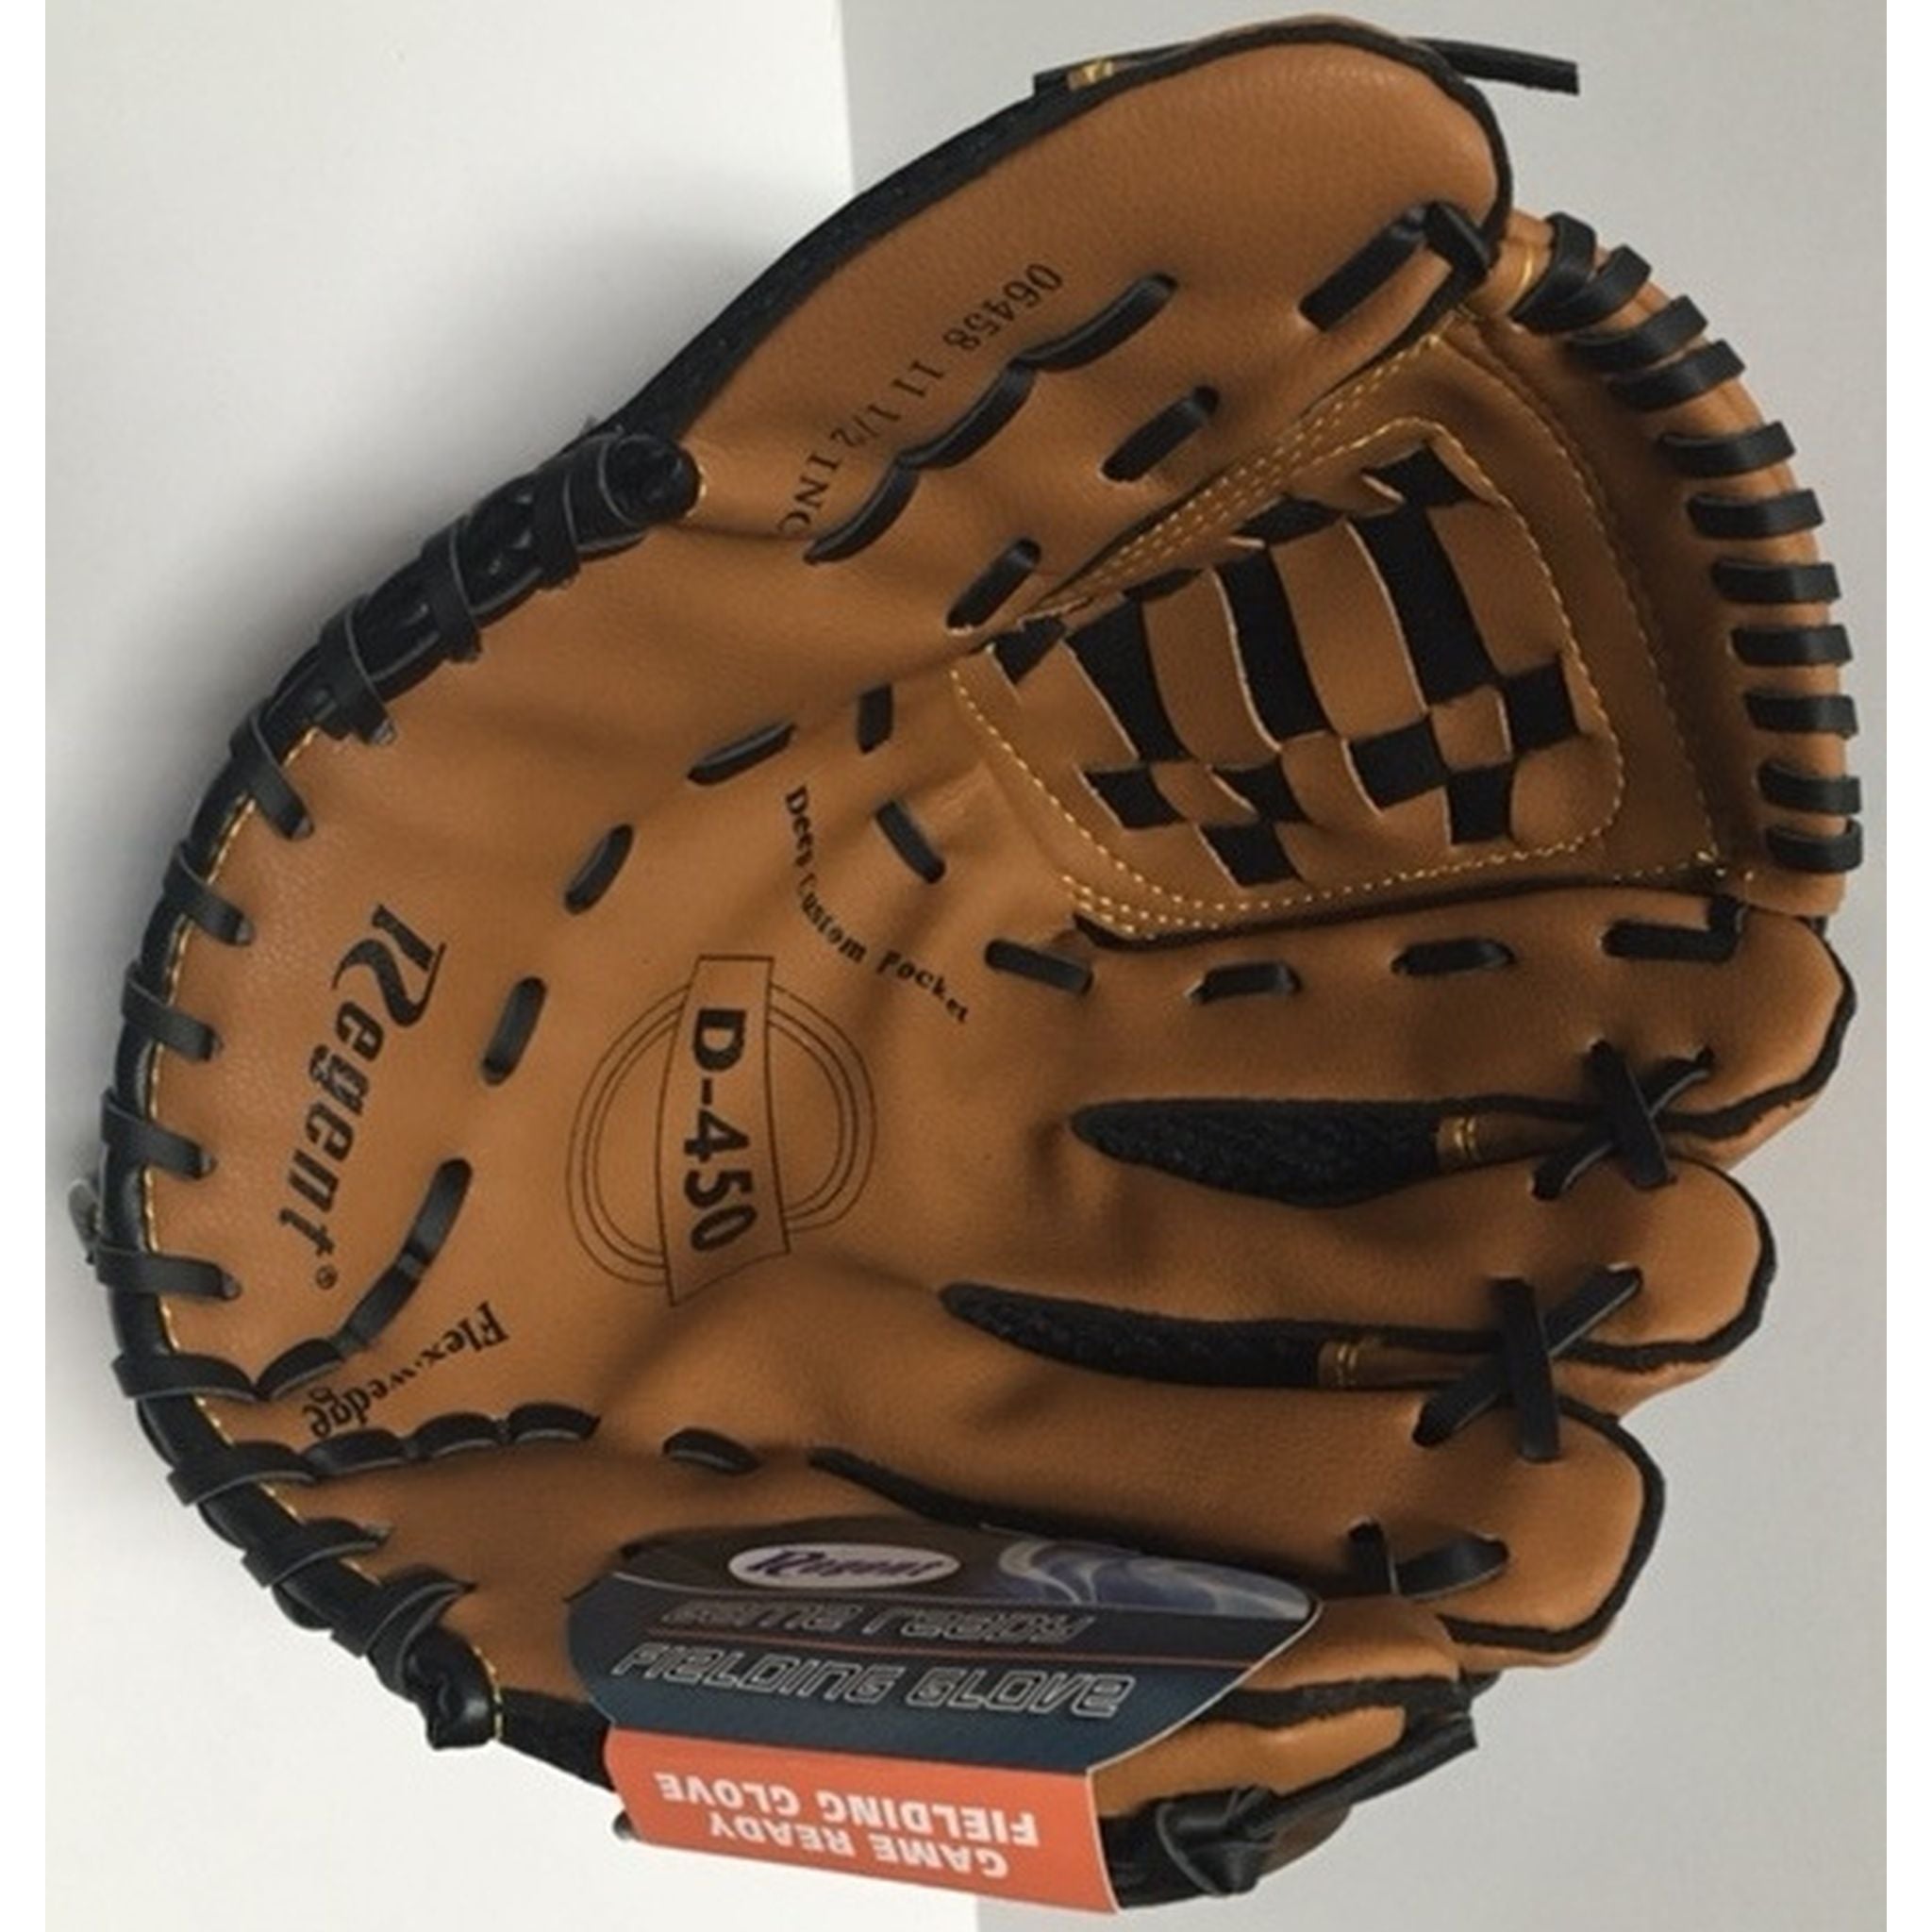 Regent D-450 11.5 inch Baseball/Softball Glove